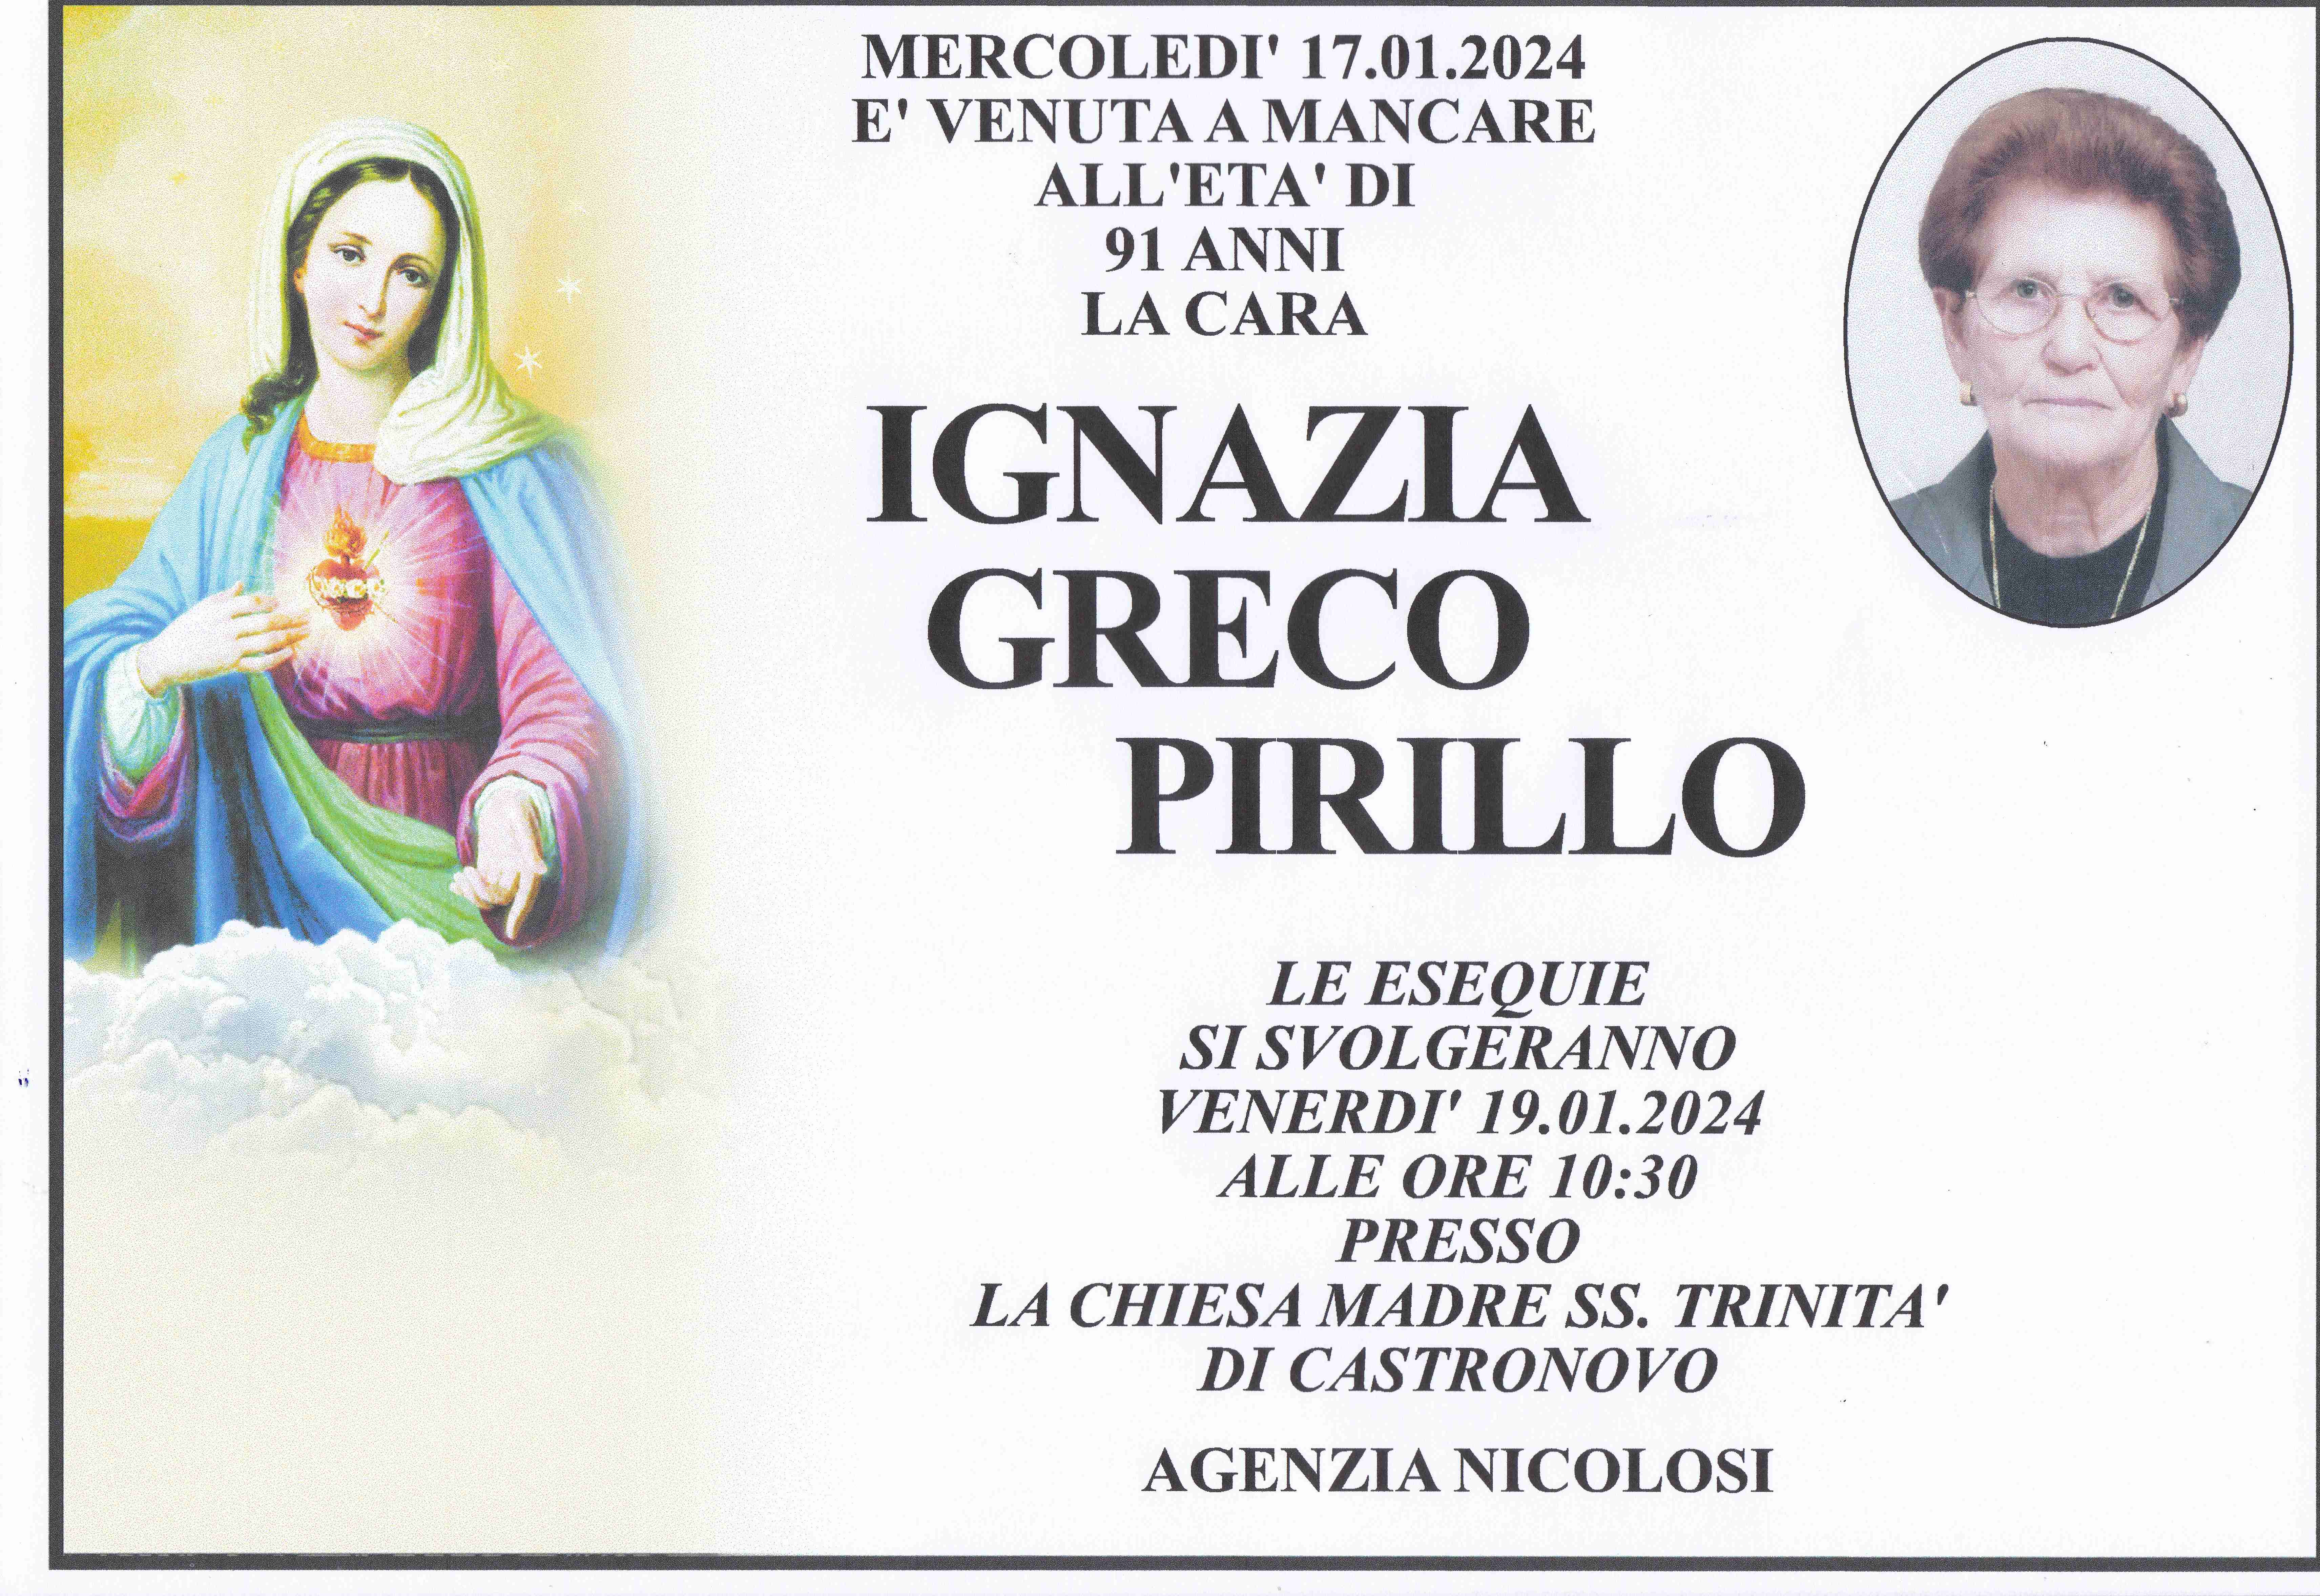 Ignazia Greco Pirillo